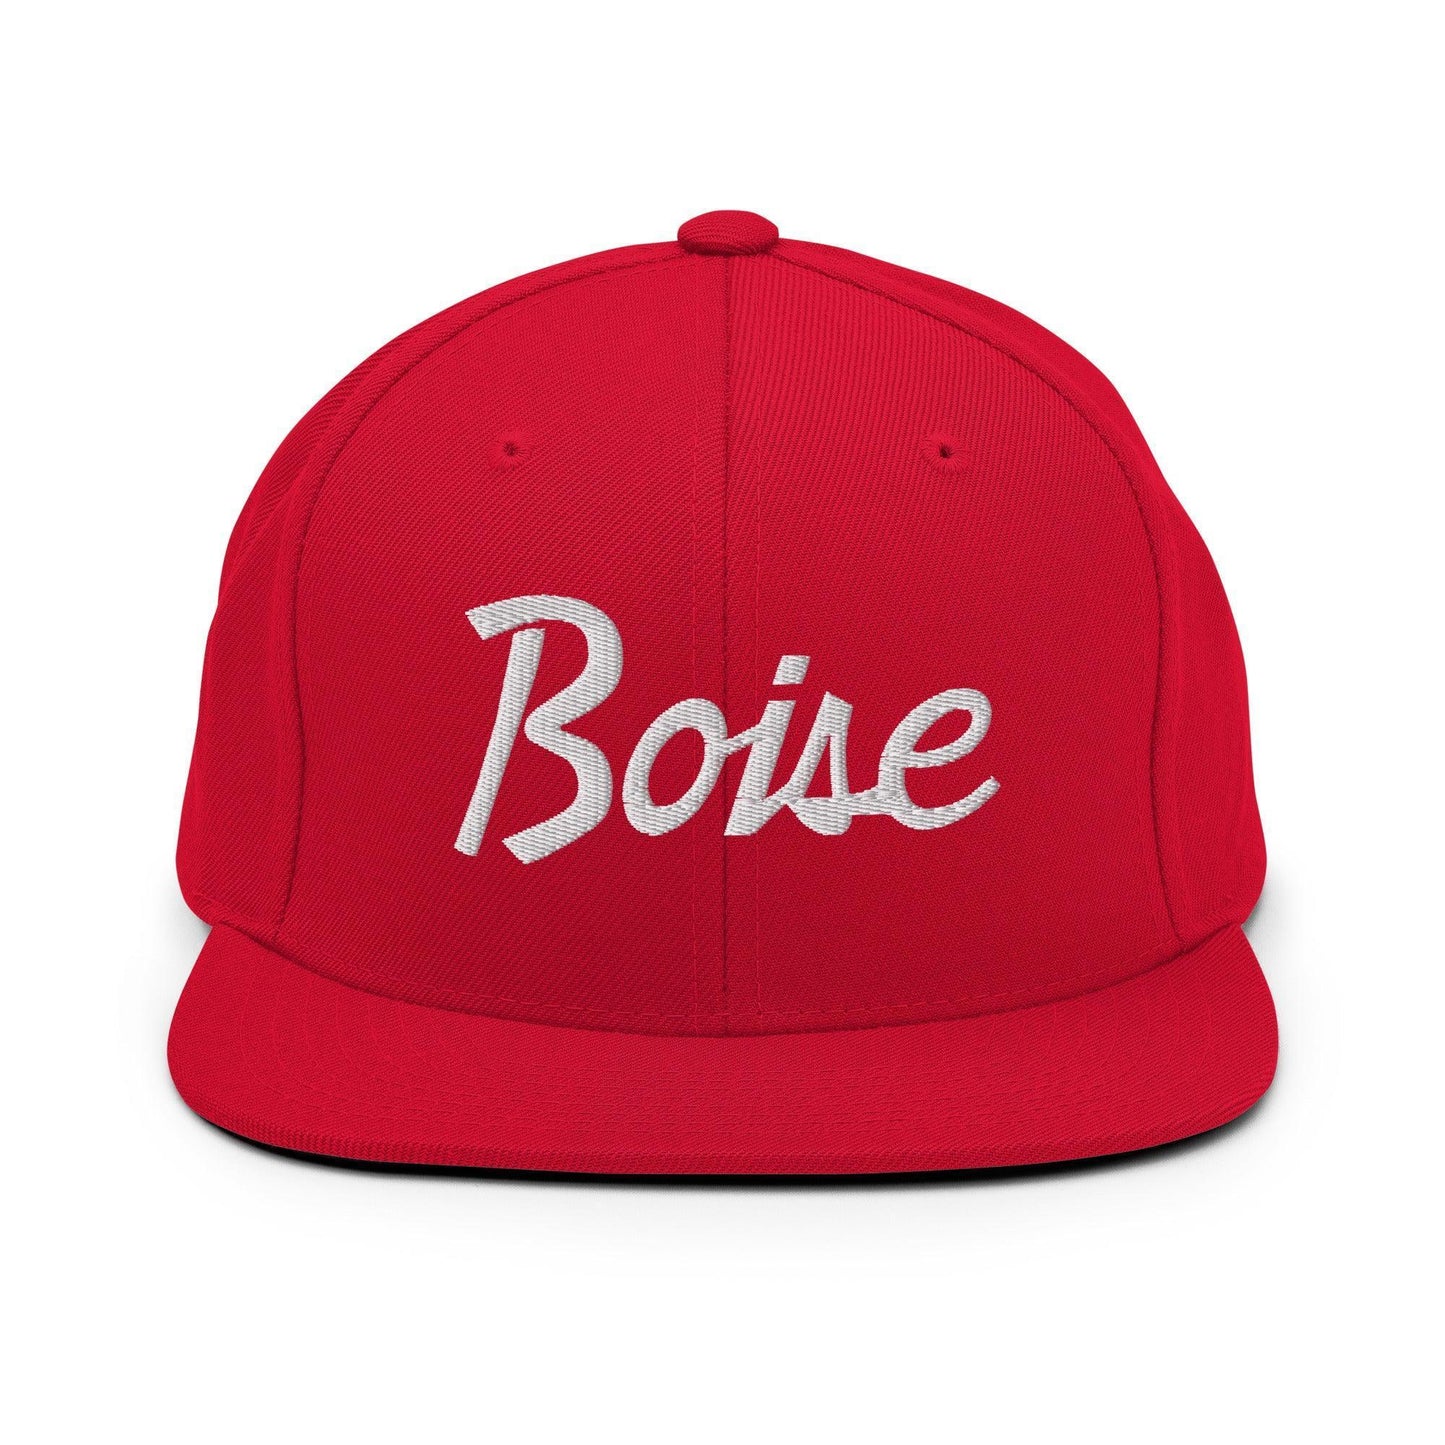 Boise Script Snapback Hat Red